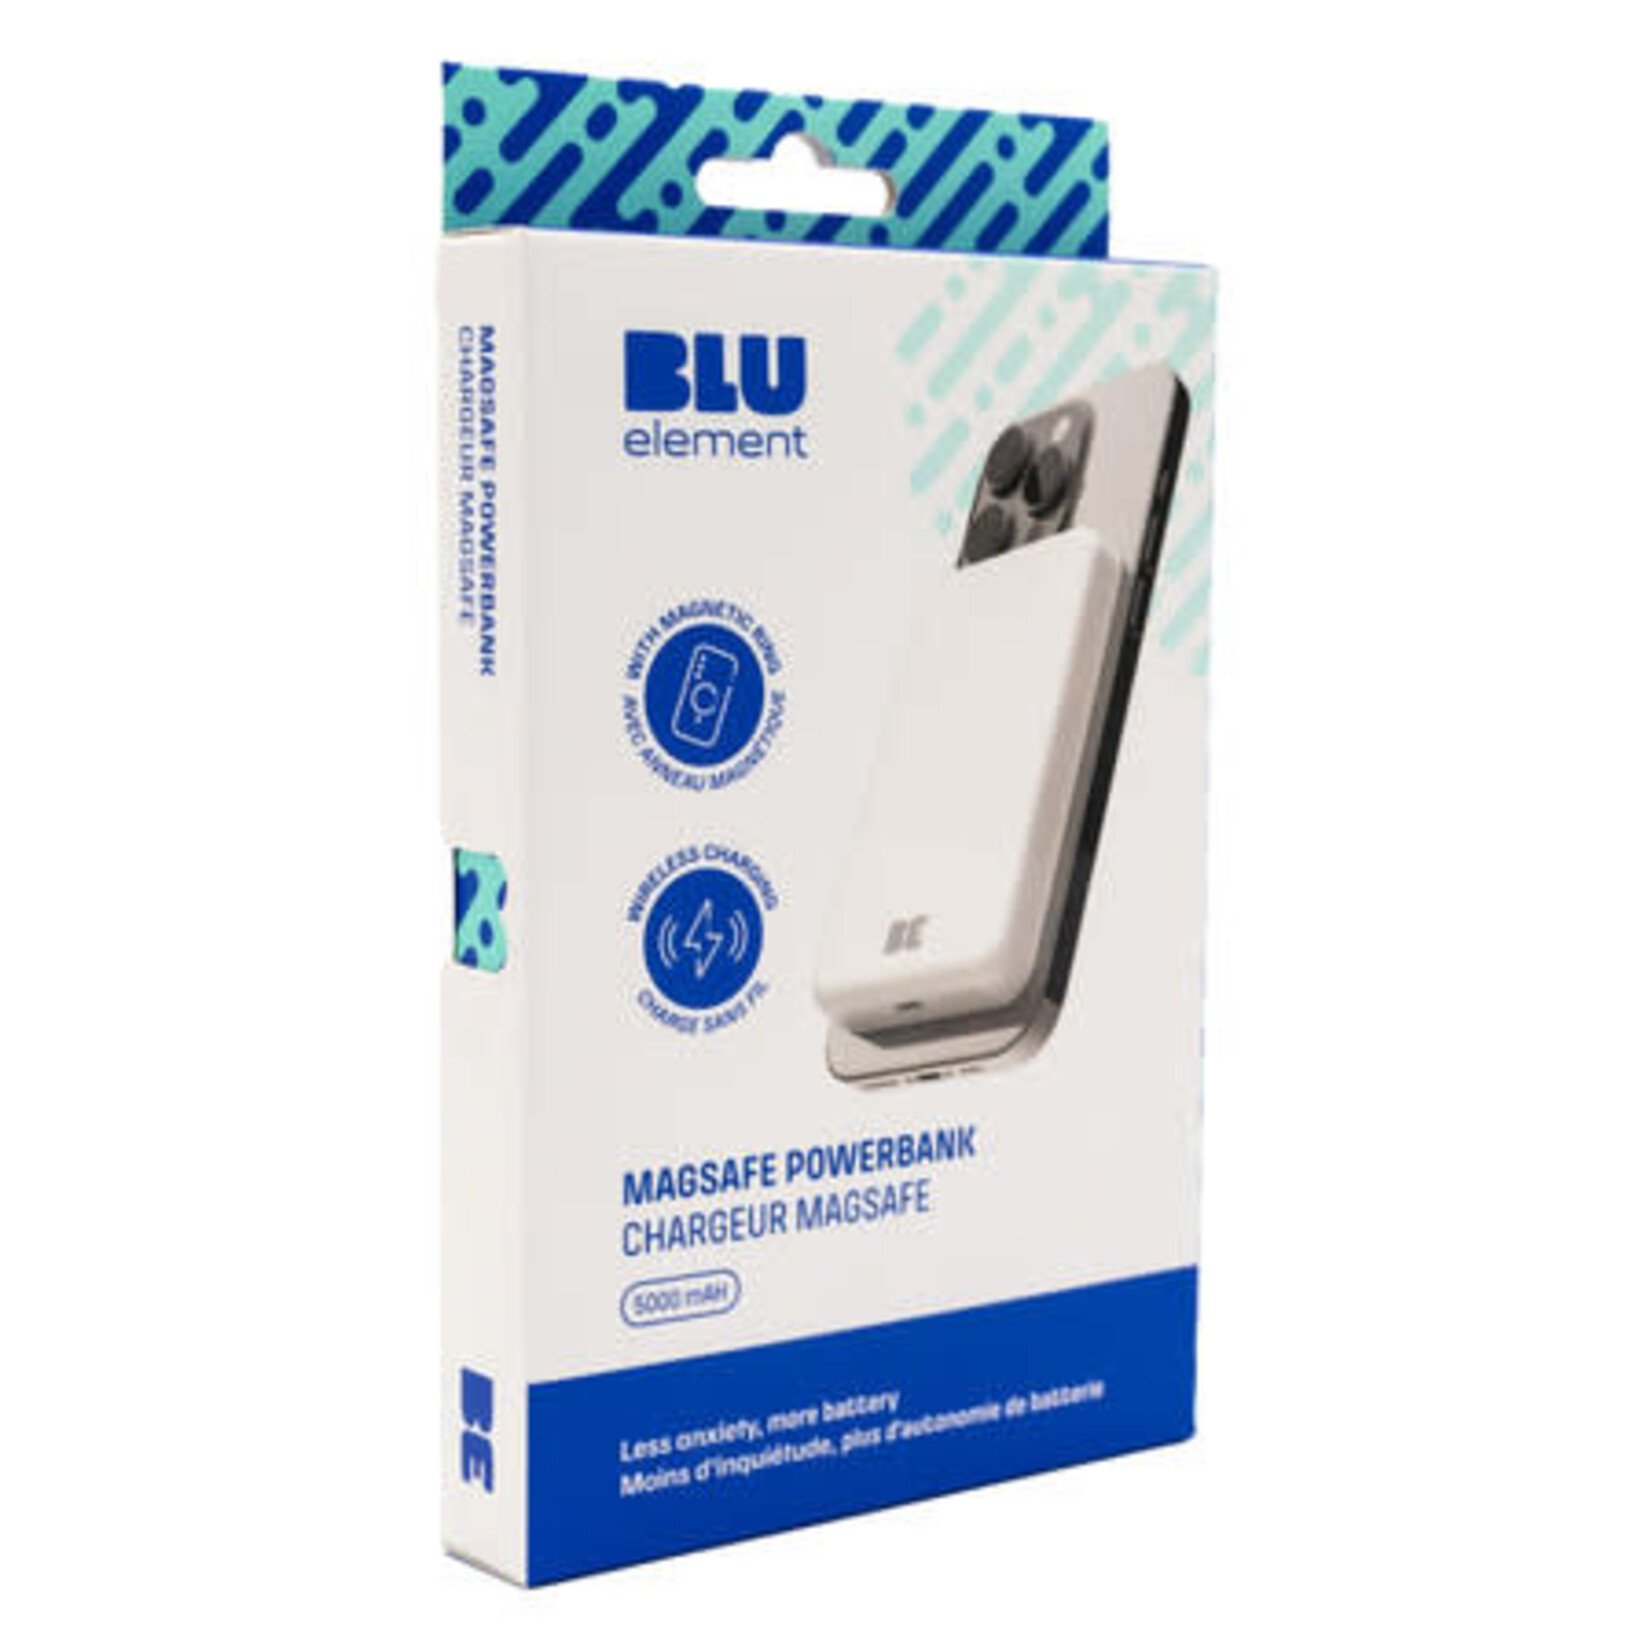 blu element MagSafe Powerbank 5000MAH Blanc